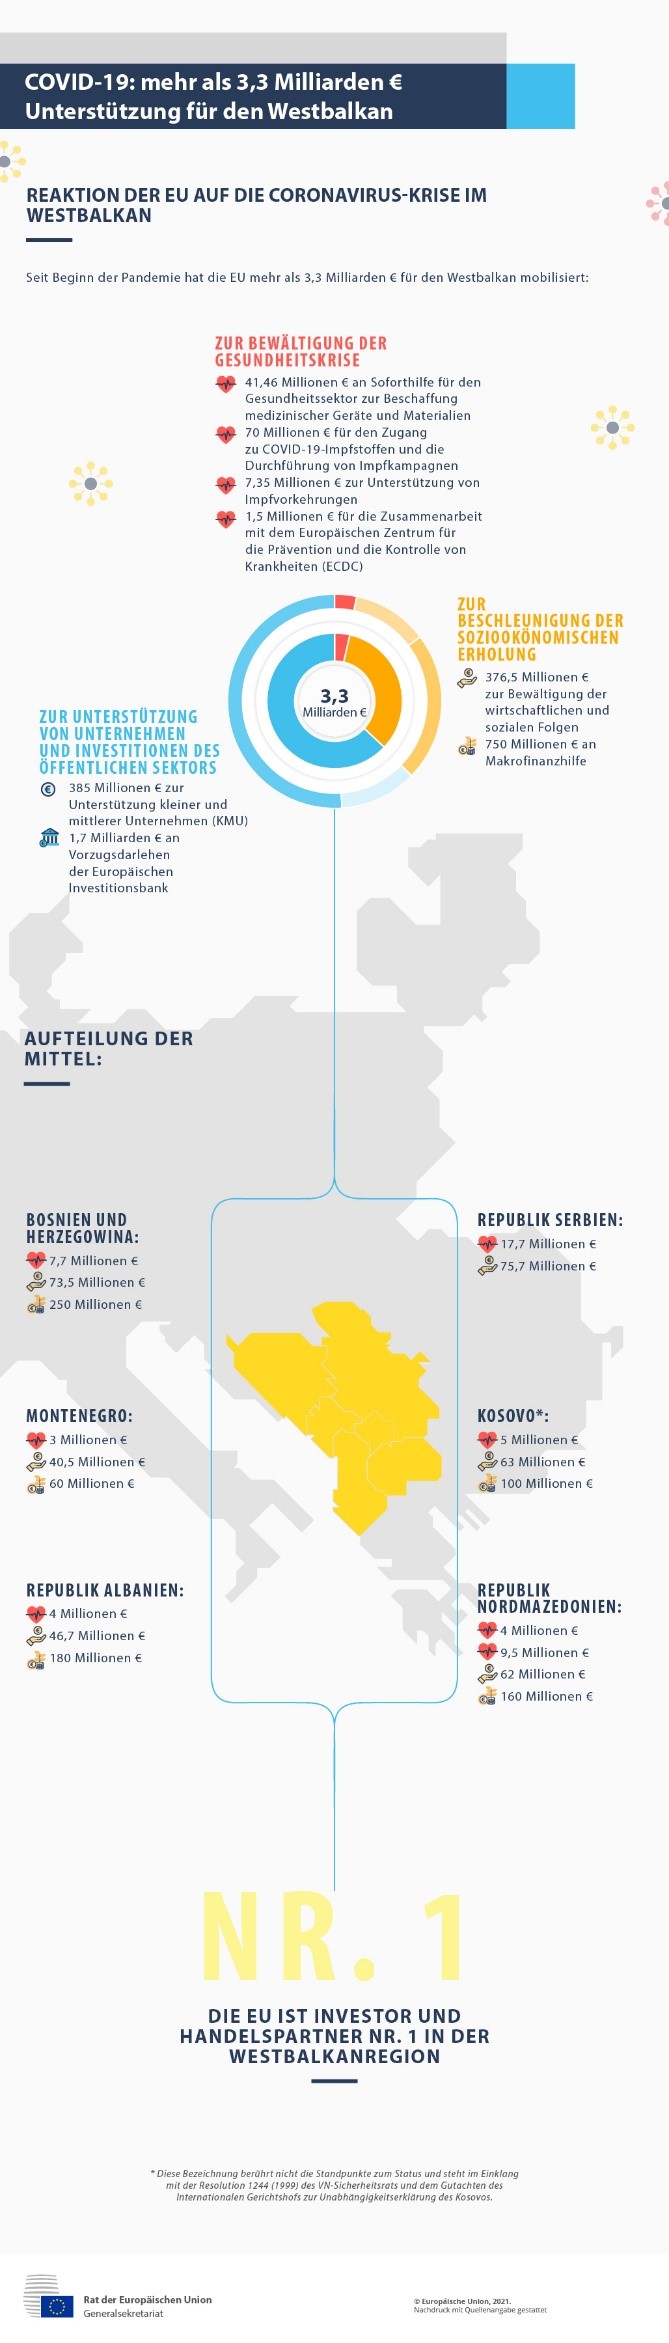 Covid-19: Mehr als 3,3 Milliarden Euro Unterstützung für den Westbalkan